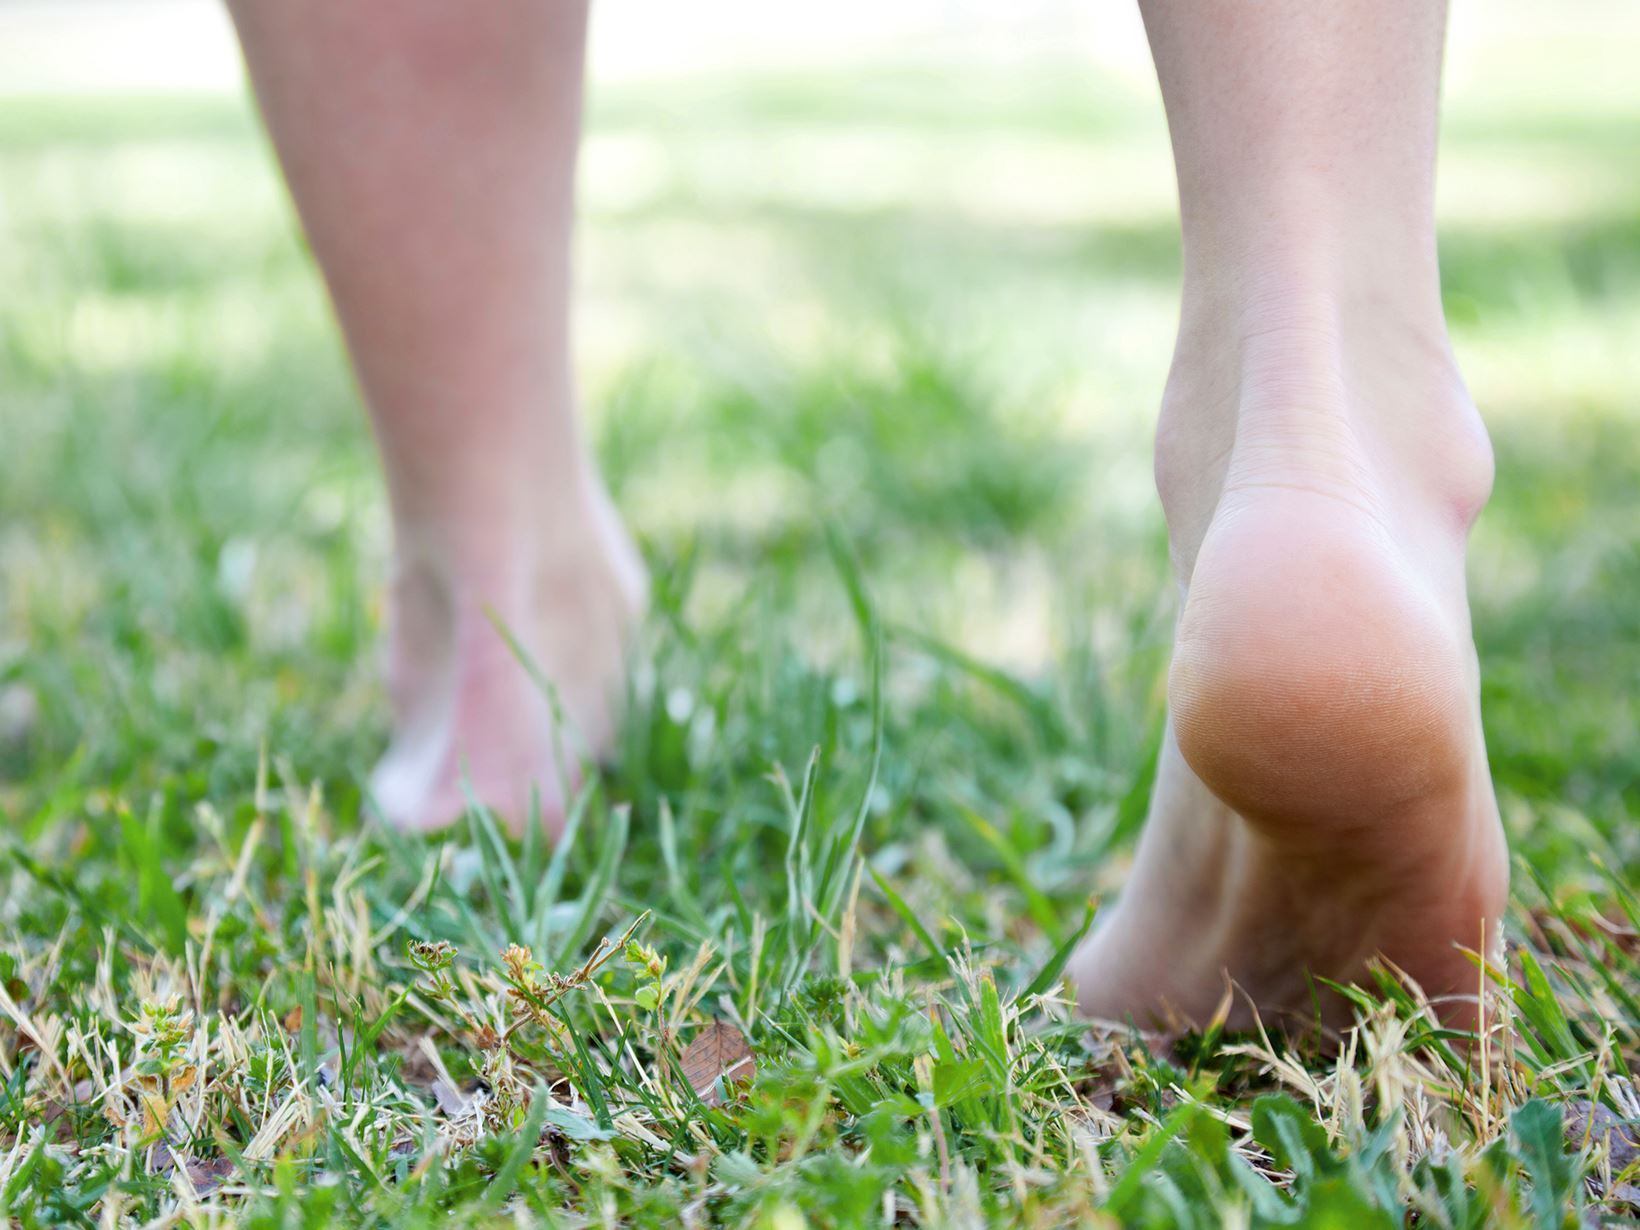 Pies descalzos sobre la hierba